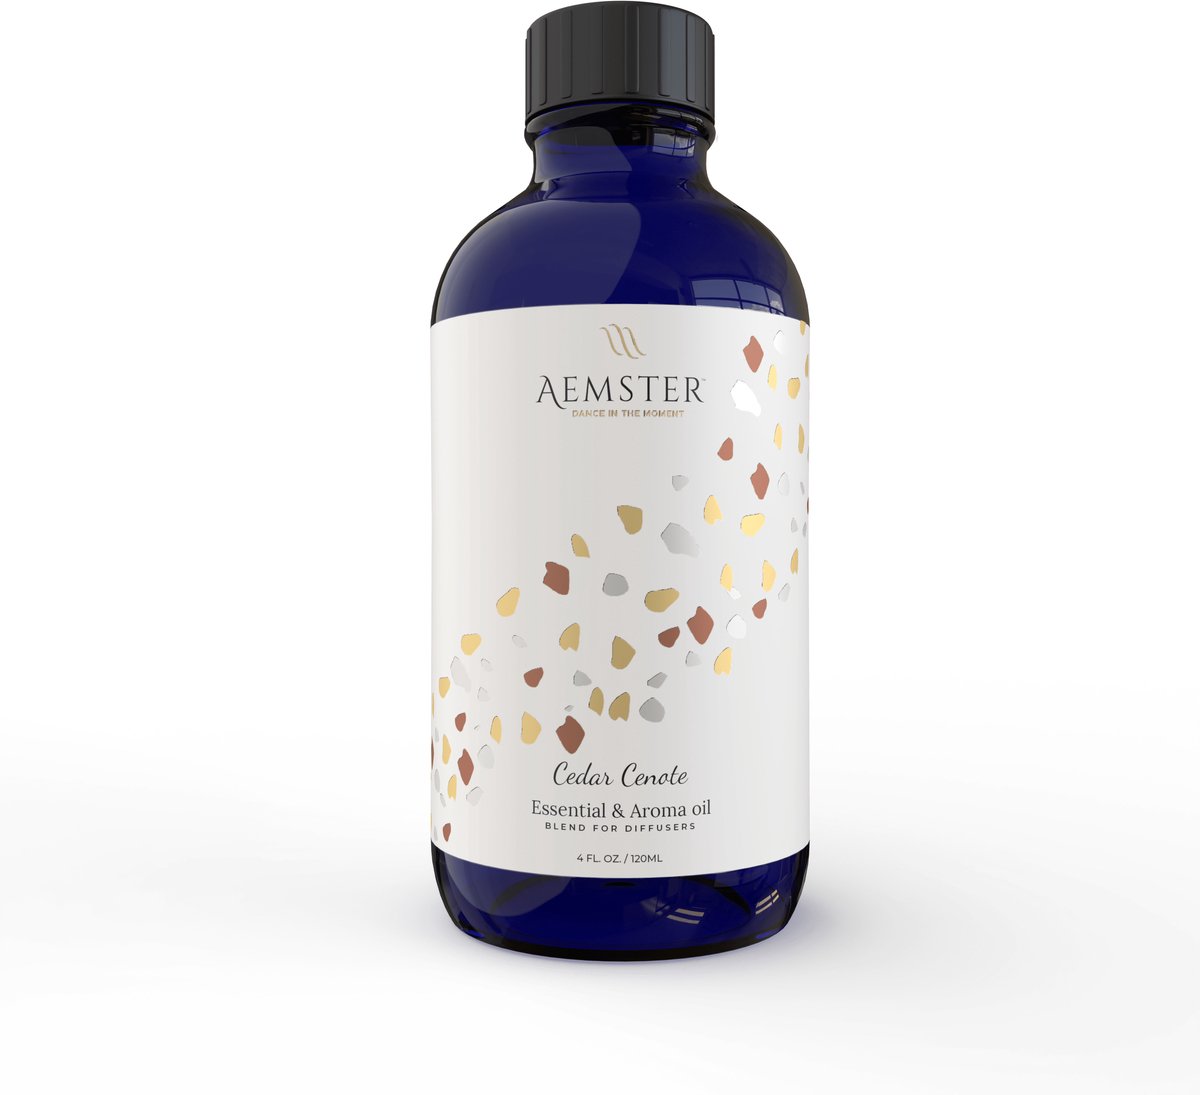 Aemster Cedar Cenote (120ml) essentiële en aroma olie blend voor aroma diffusers en geurverspreiders